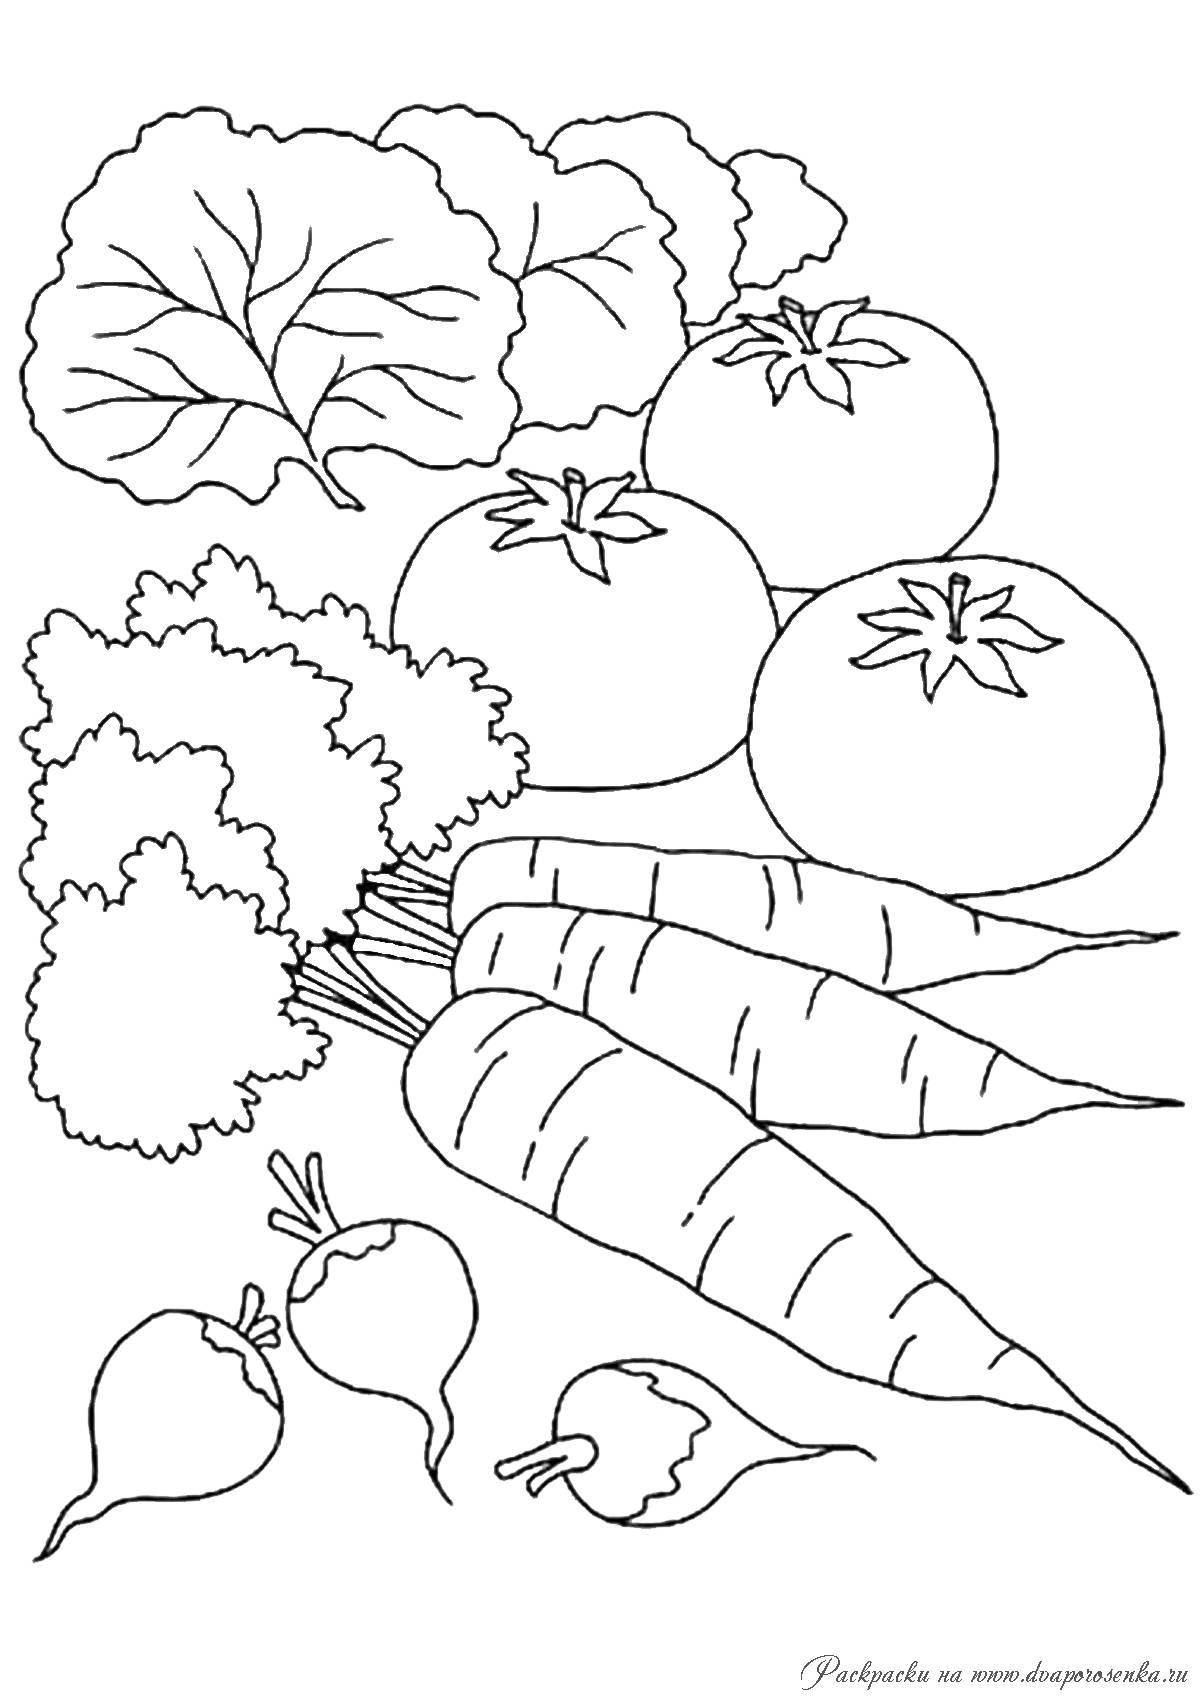 Забавная раскраска овощей для детей 3-4 лет